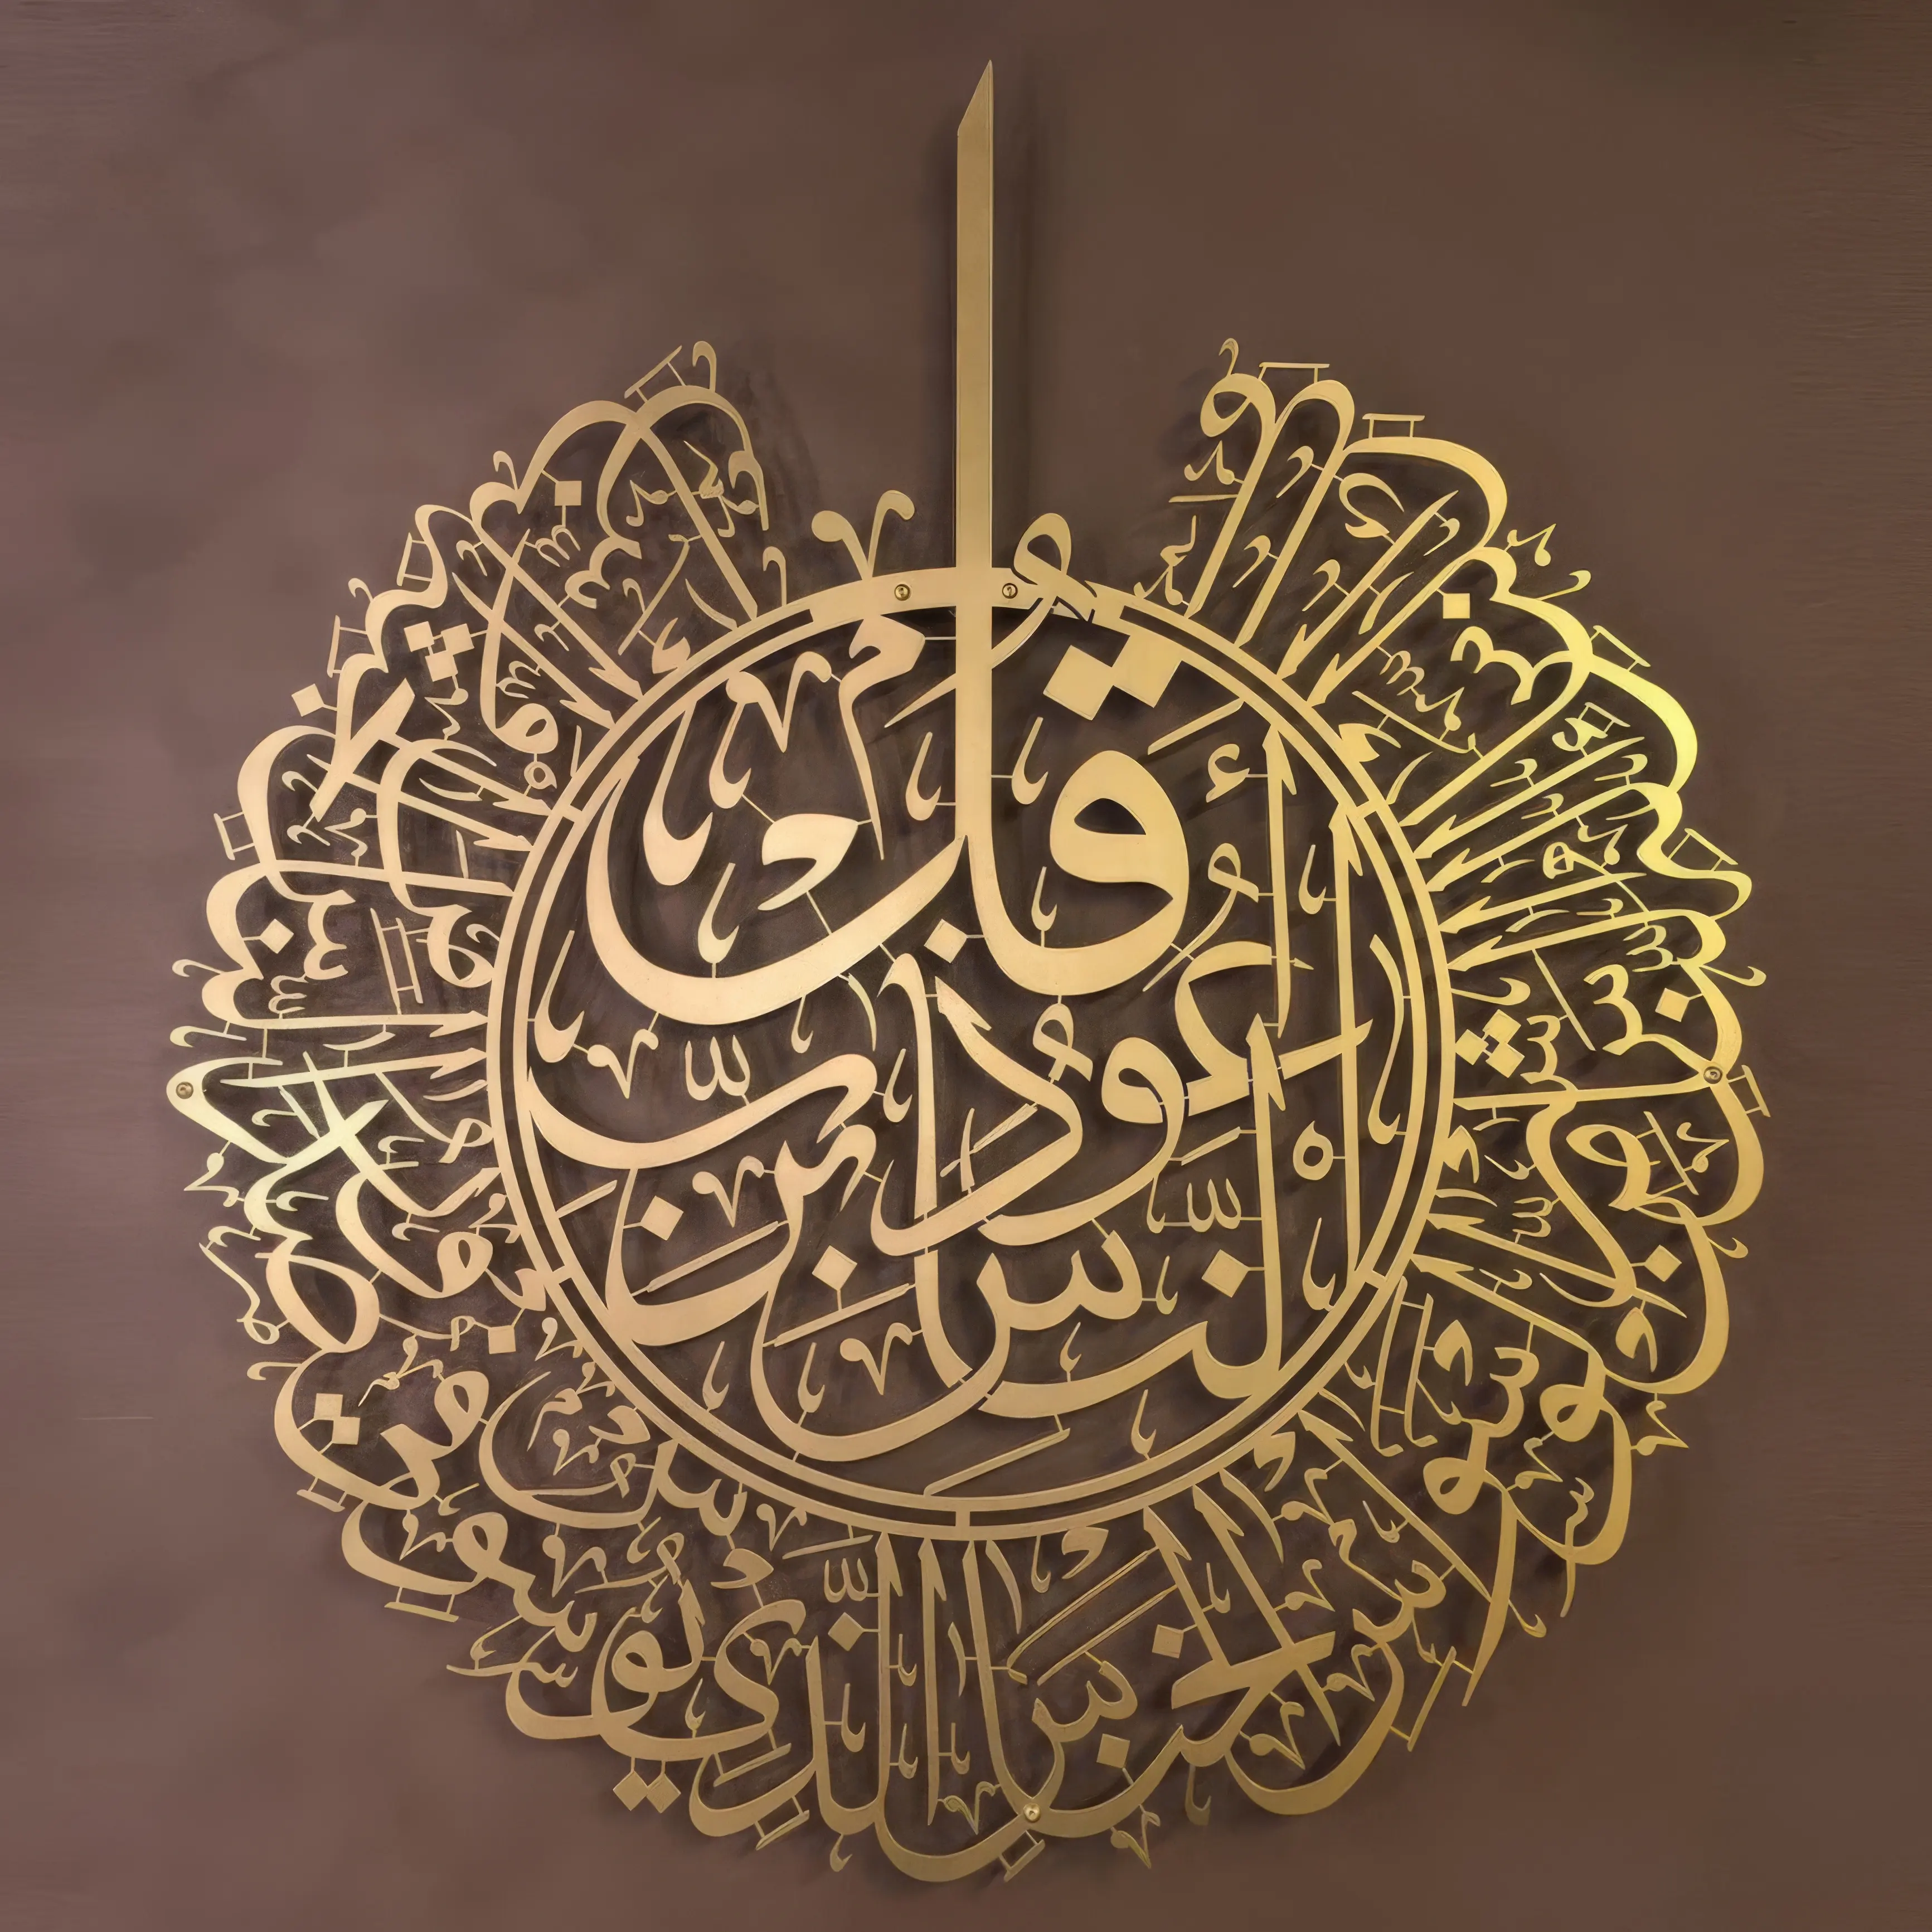 لوحة فنية للجدران الإسلامية - صورة معدنية لسورة الفلق بخط: هدية إسلامية لتزيين المنزل مستوحاة من القرآن الكريم